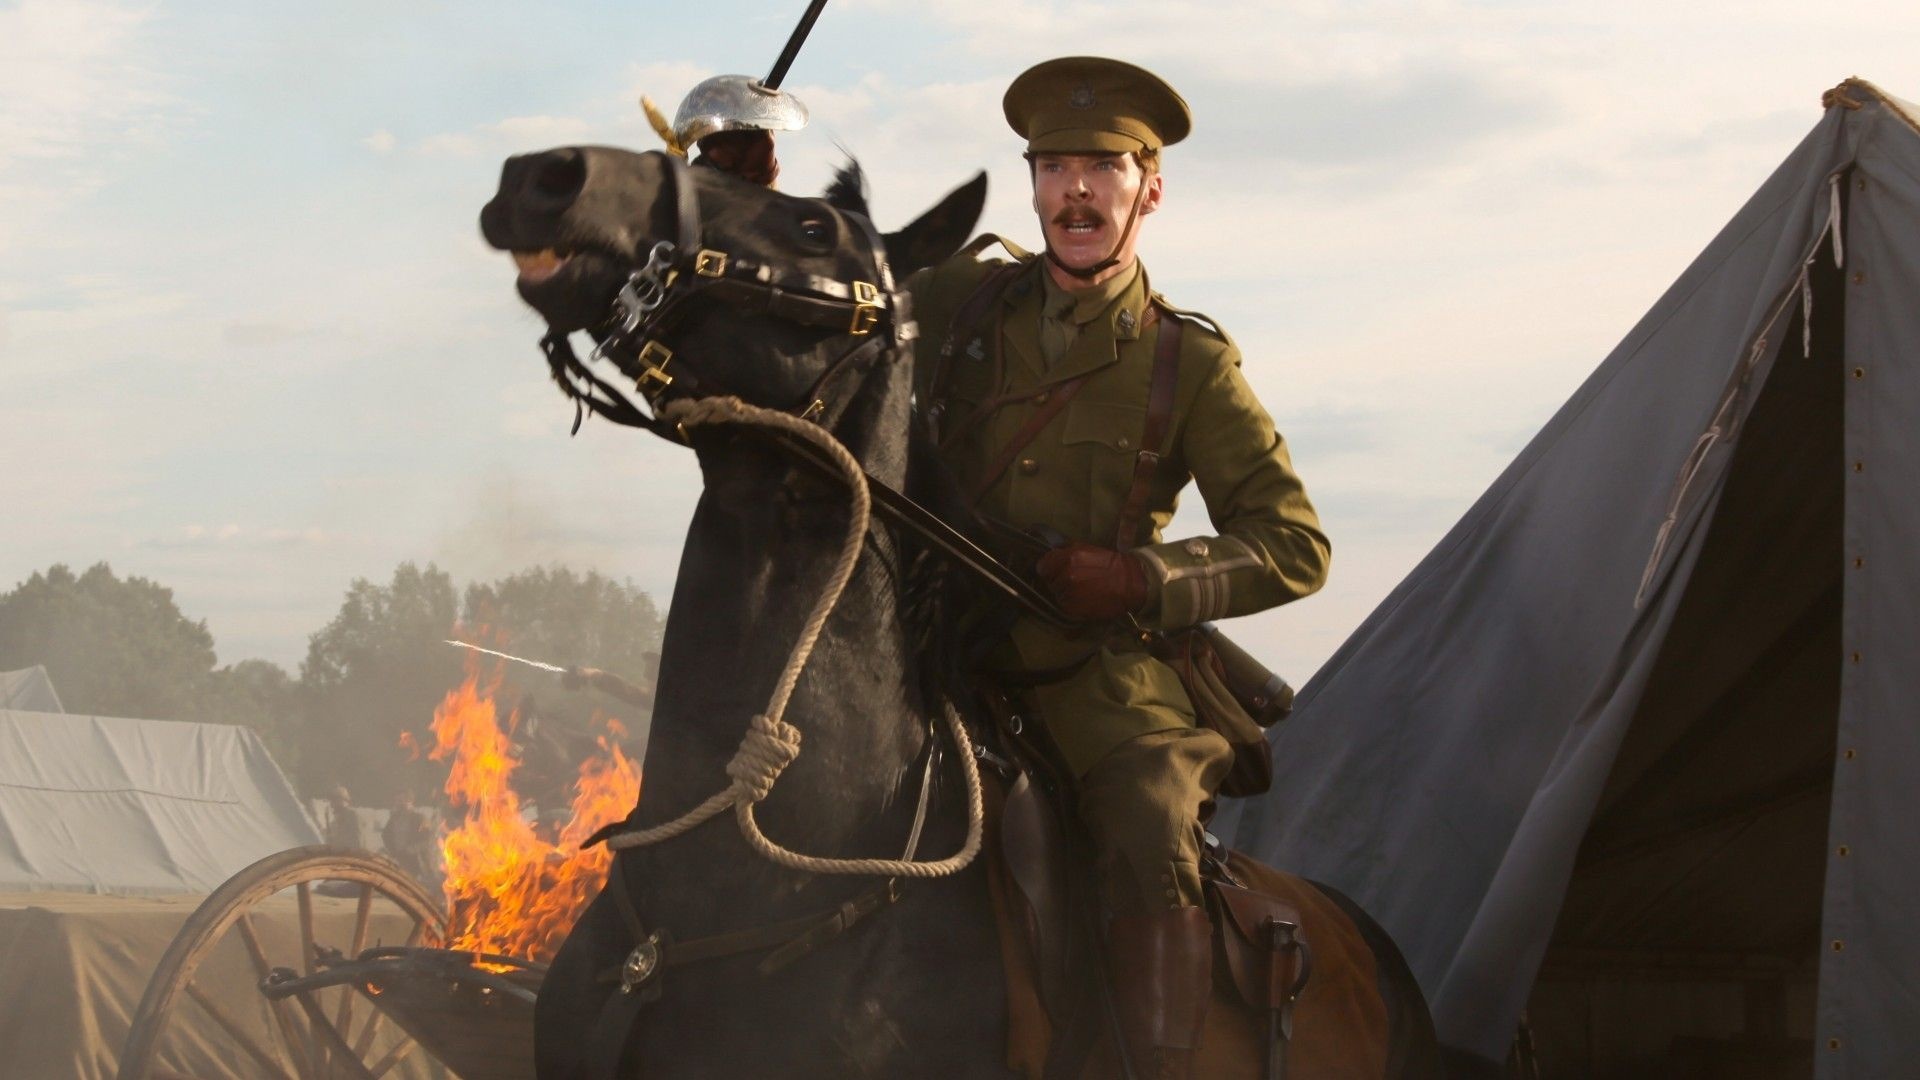 War Horse: Steven Spielberg's epic adventure, WWI. 1920x1080 Full HD Wallpaper.